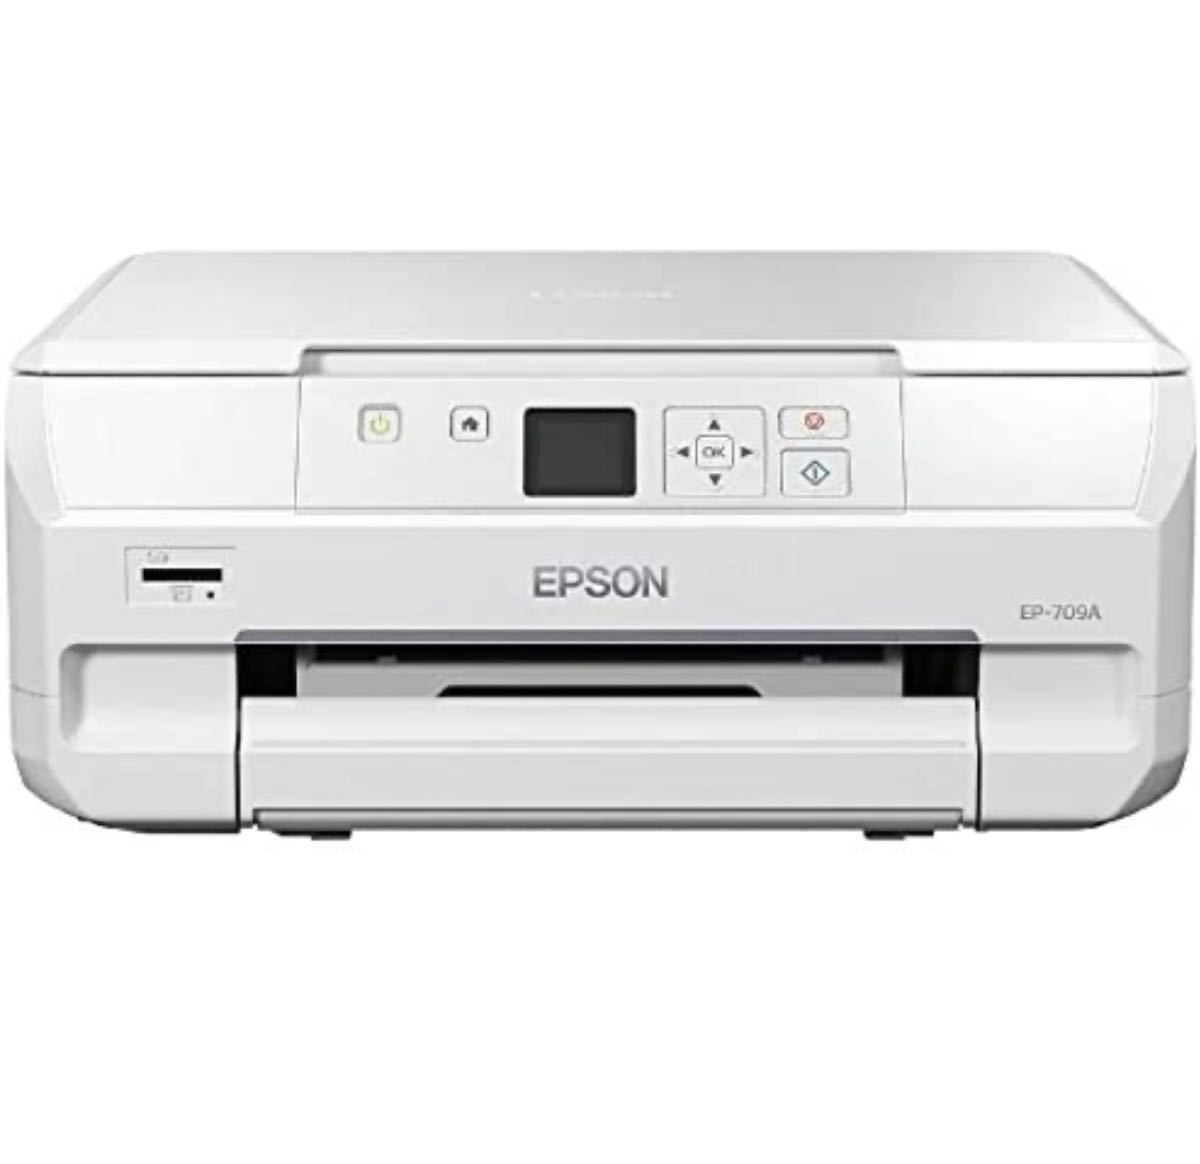 EPSON EP-709A 新品未使用